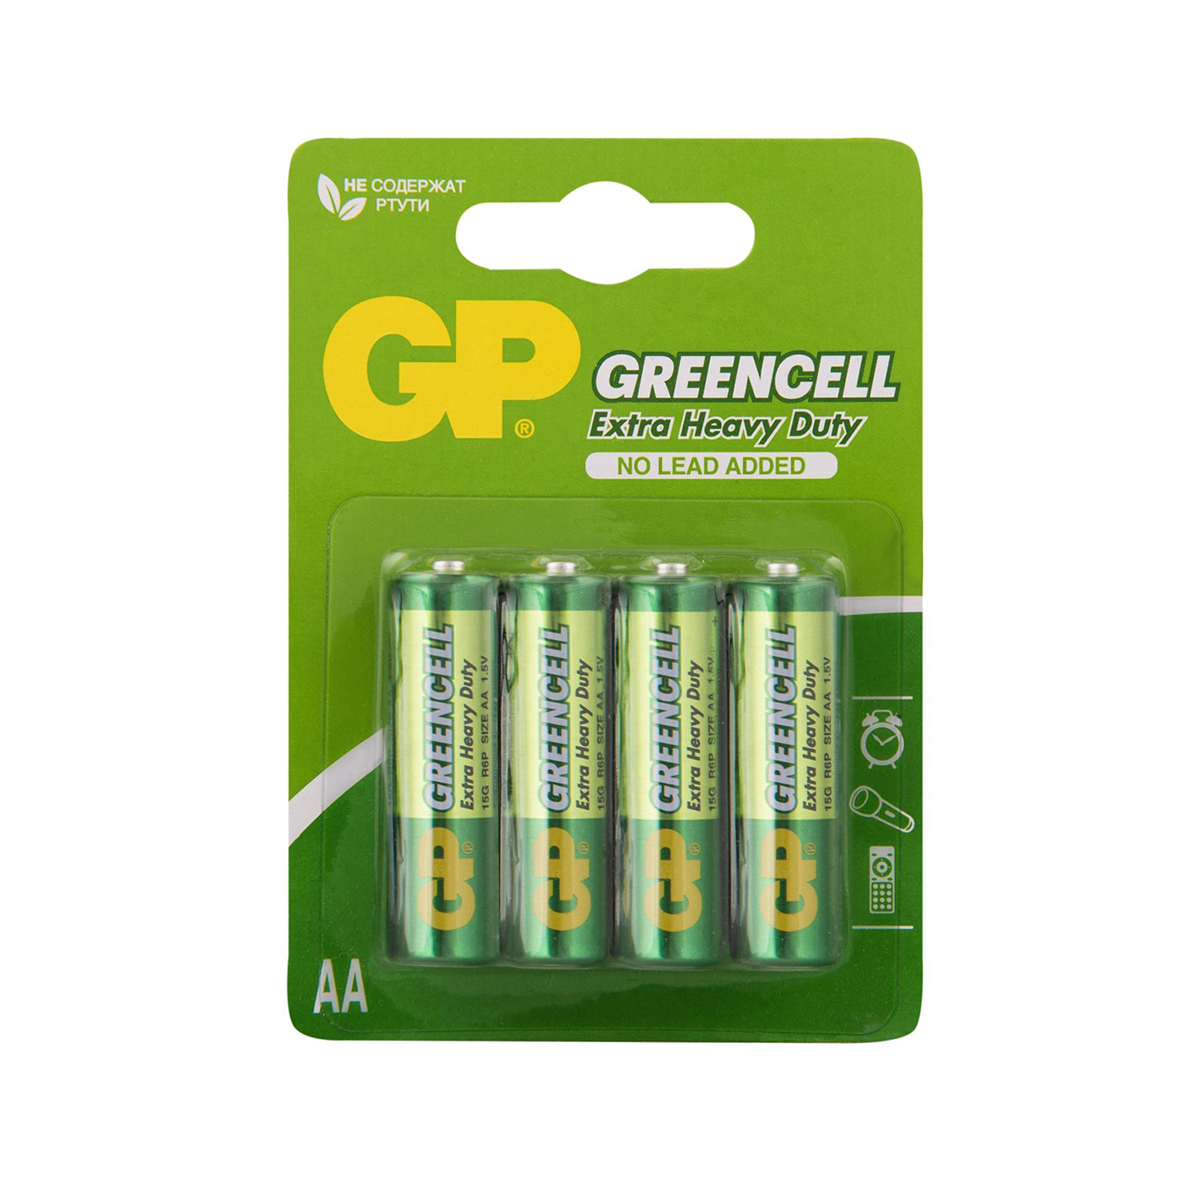 Батарейка gp greencell 15g-2cr4  тип аа (4 шт. в блистере) (18/72)